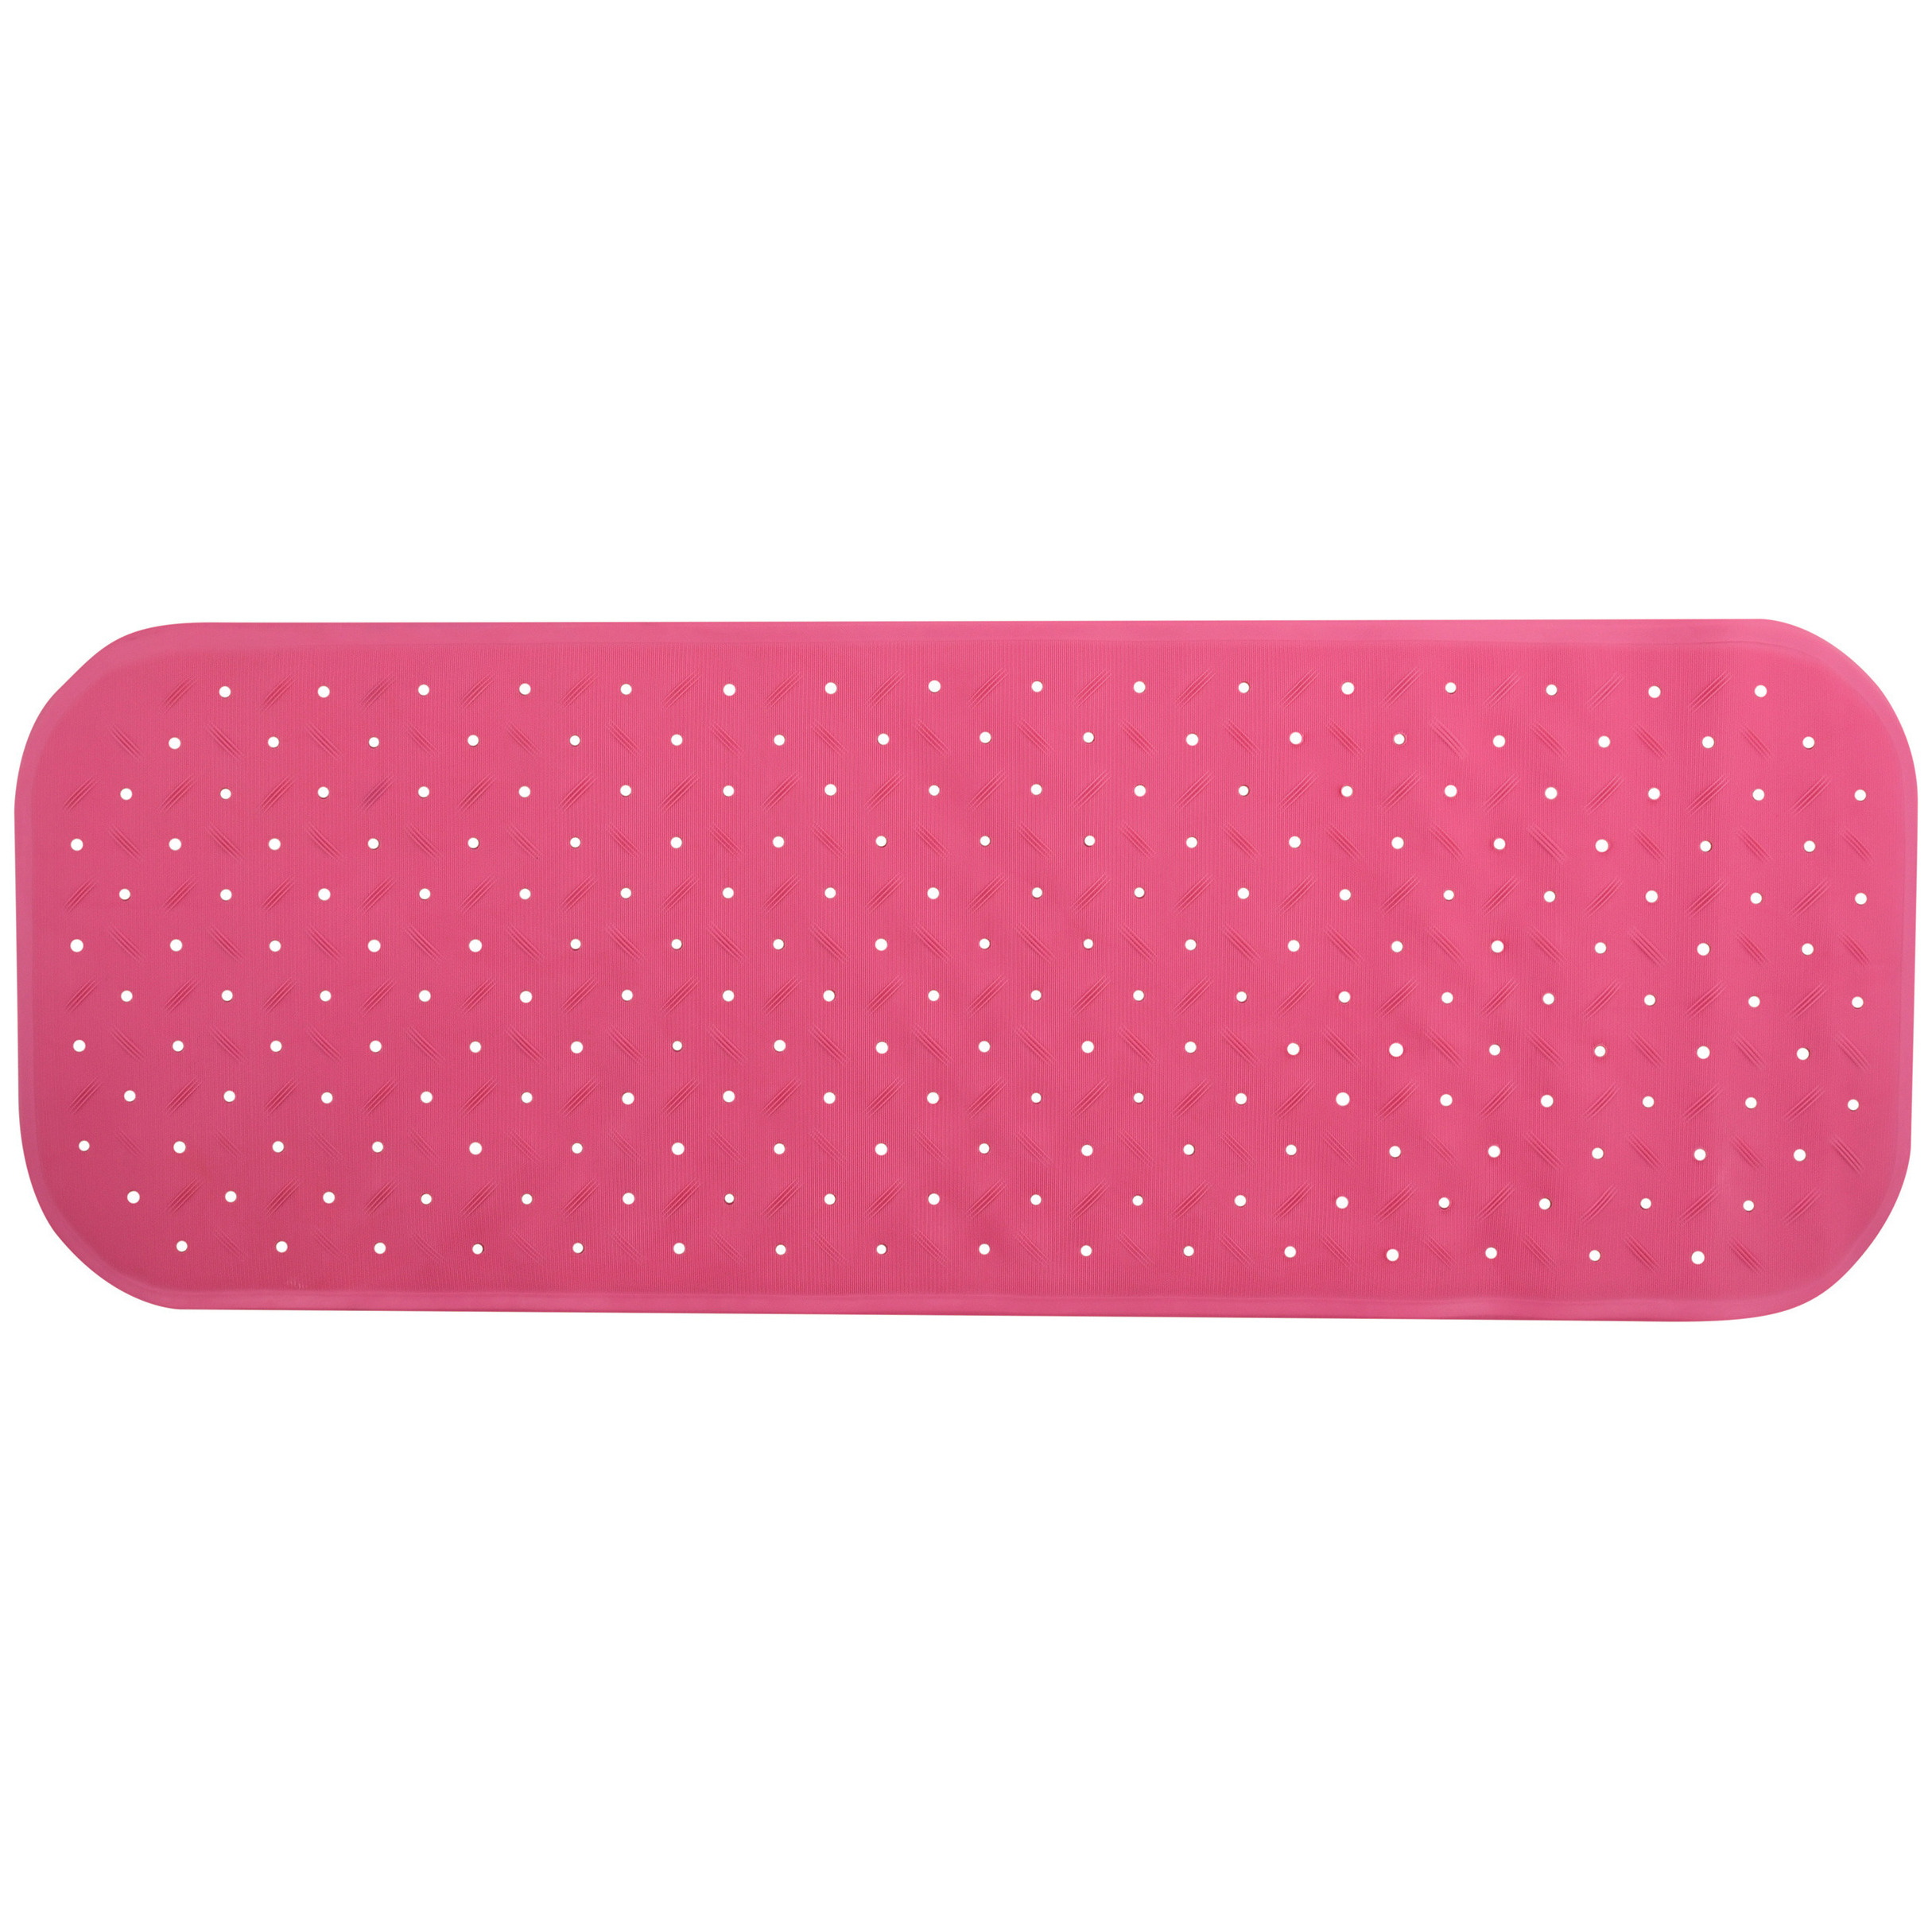 Douche-bad anti-slip mat badkamer rubber roze 36 x 97 cm rechthoek XXL-size